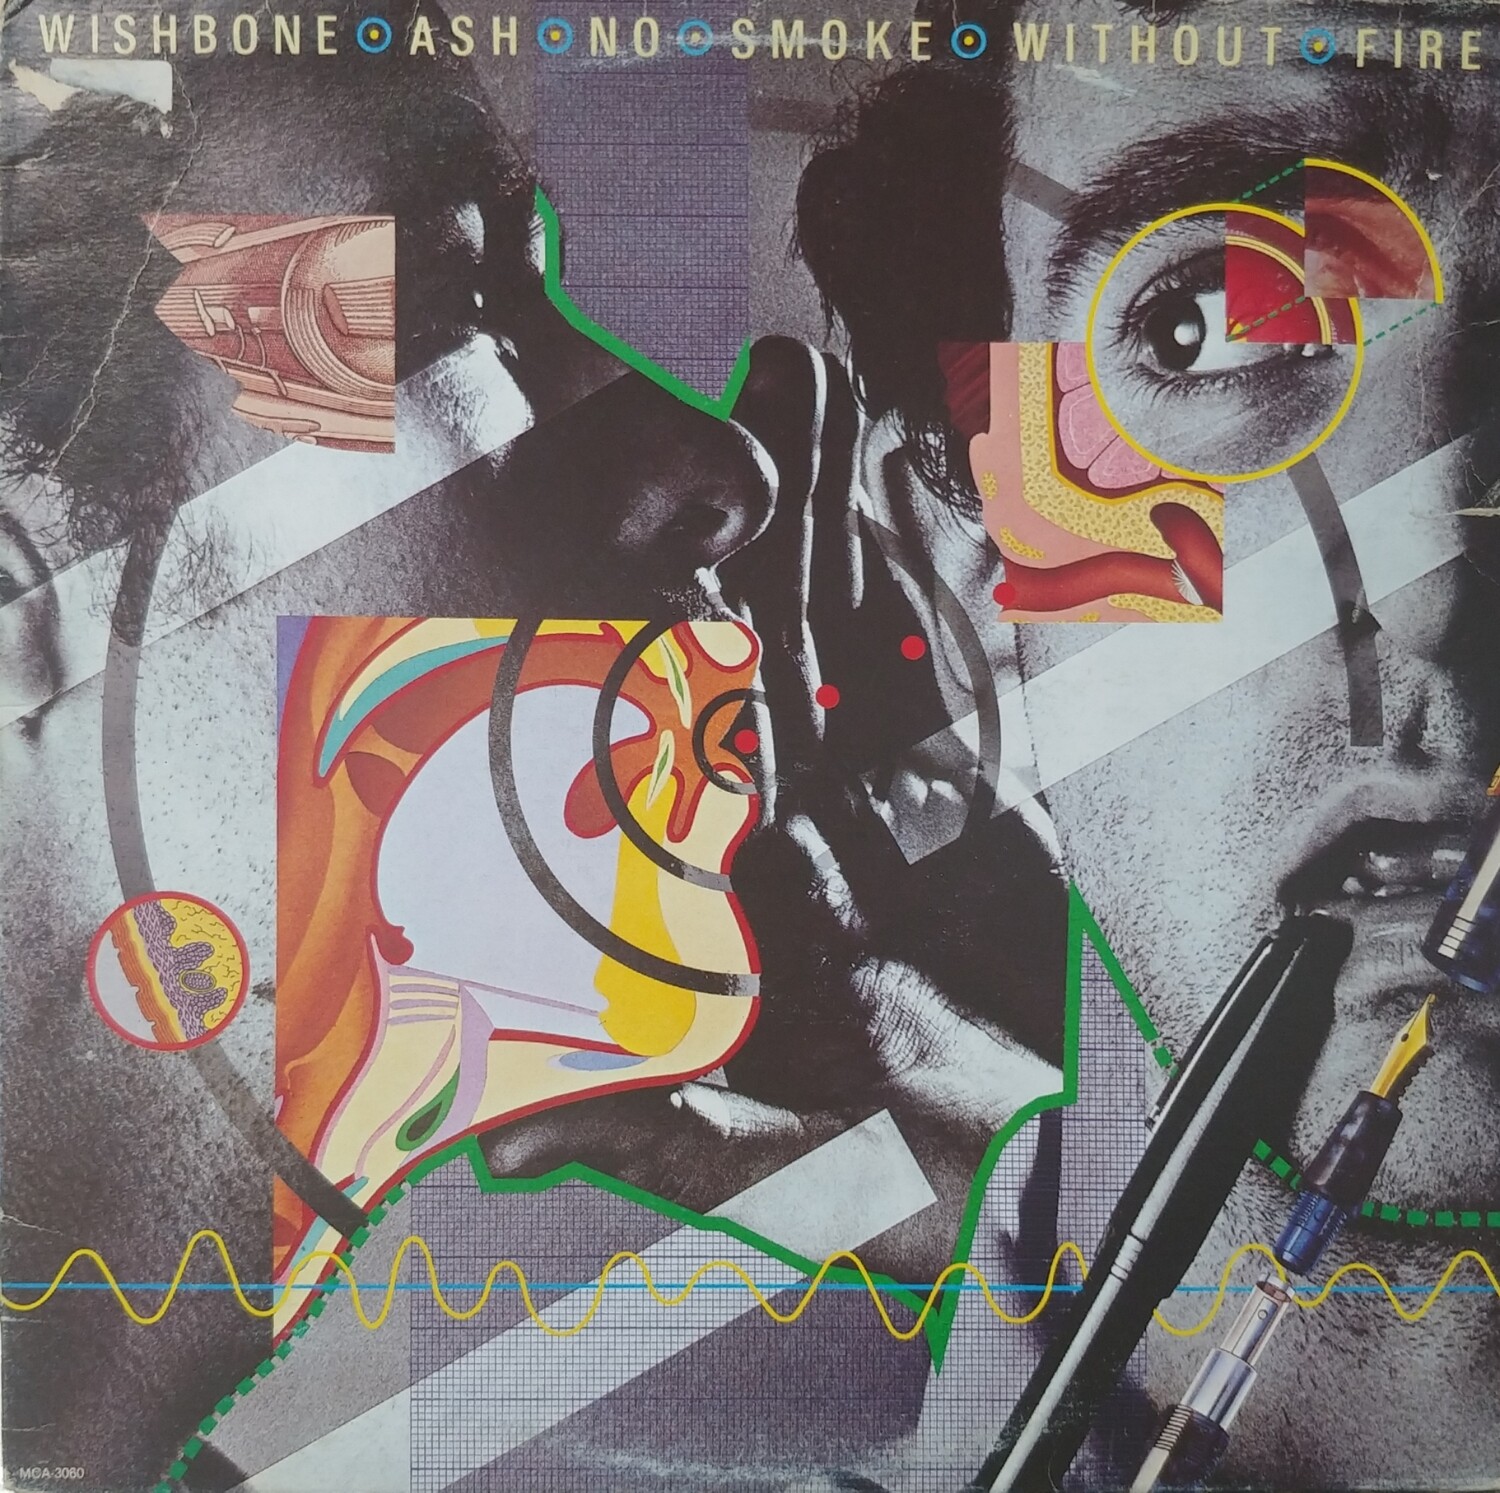 Wishbone Ash - No smoke without fire